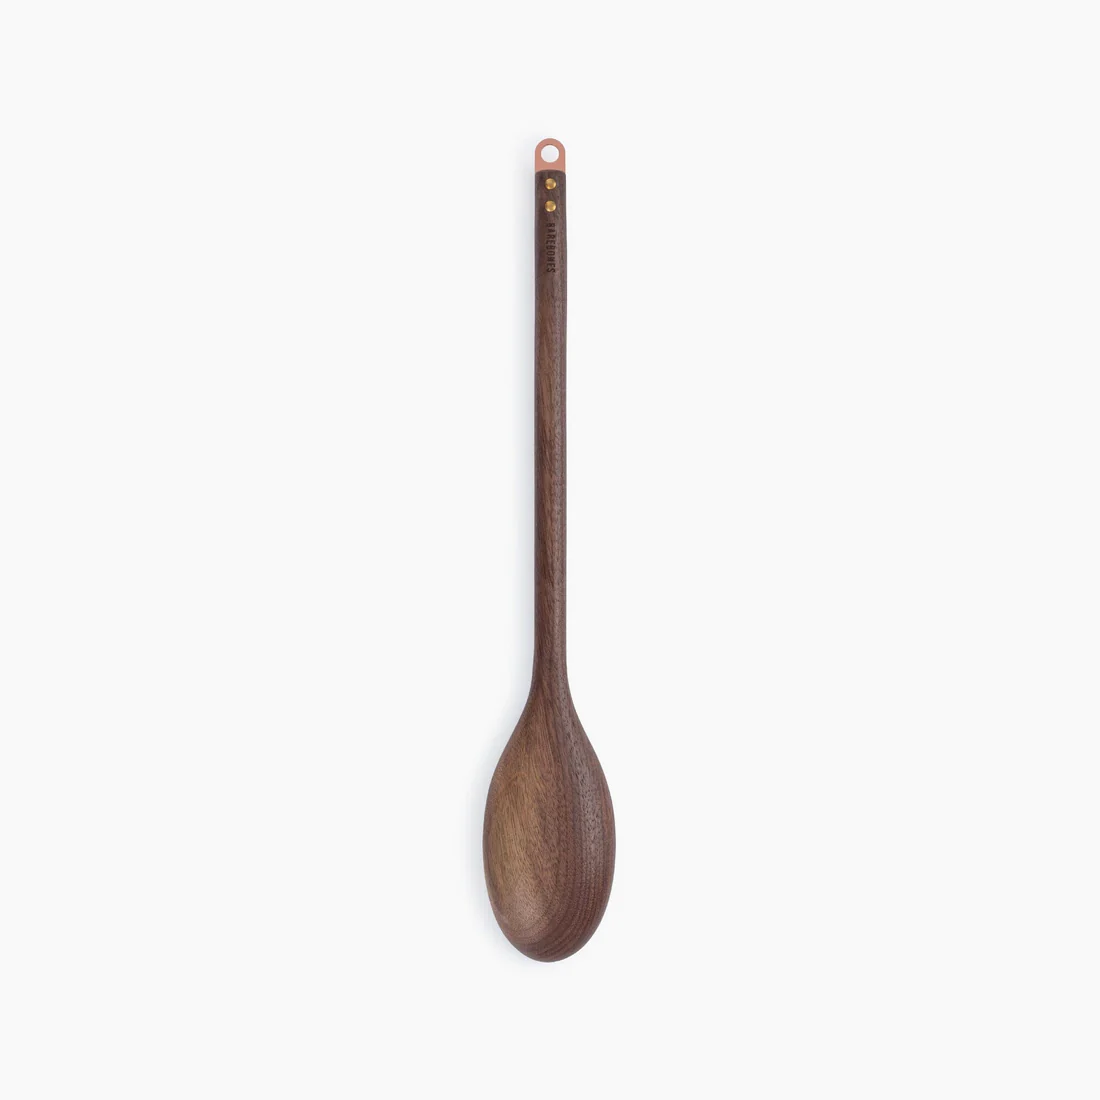 Wood Spoon